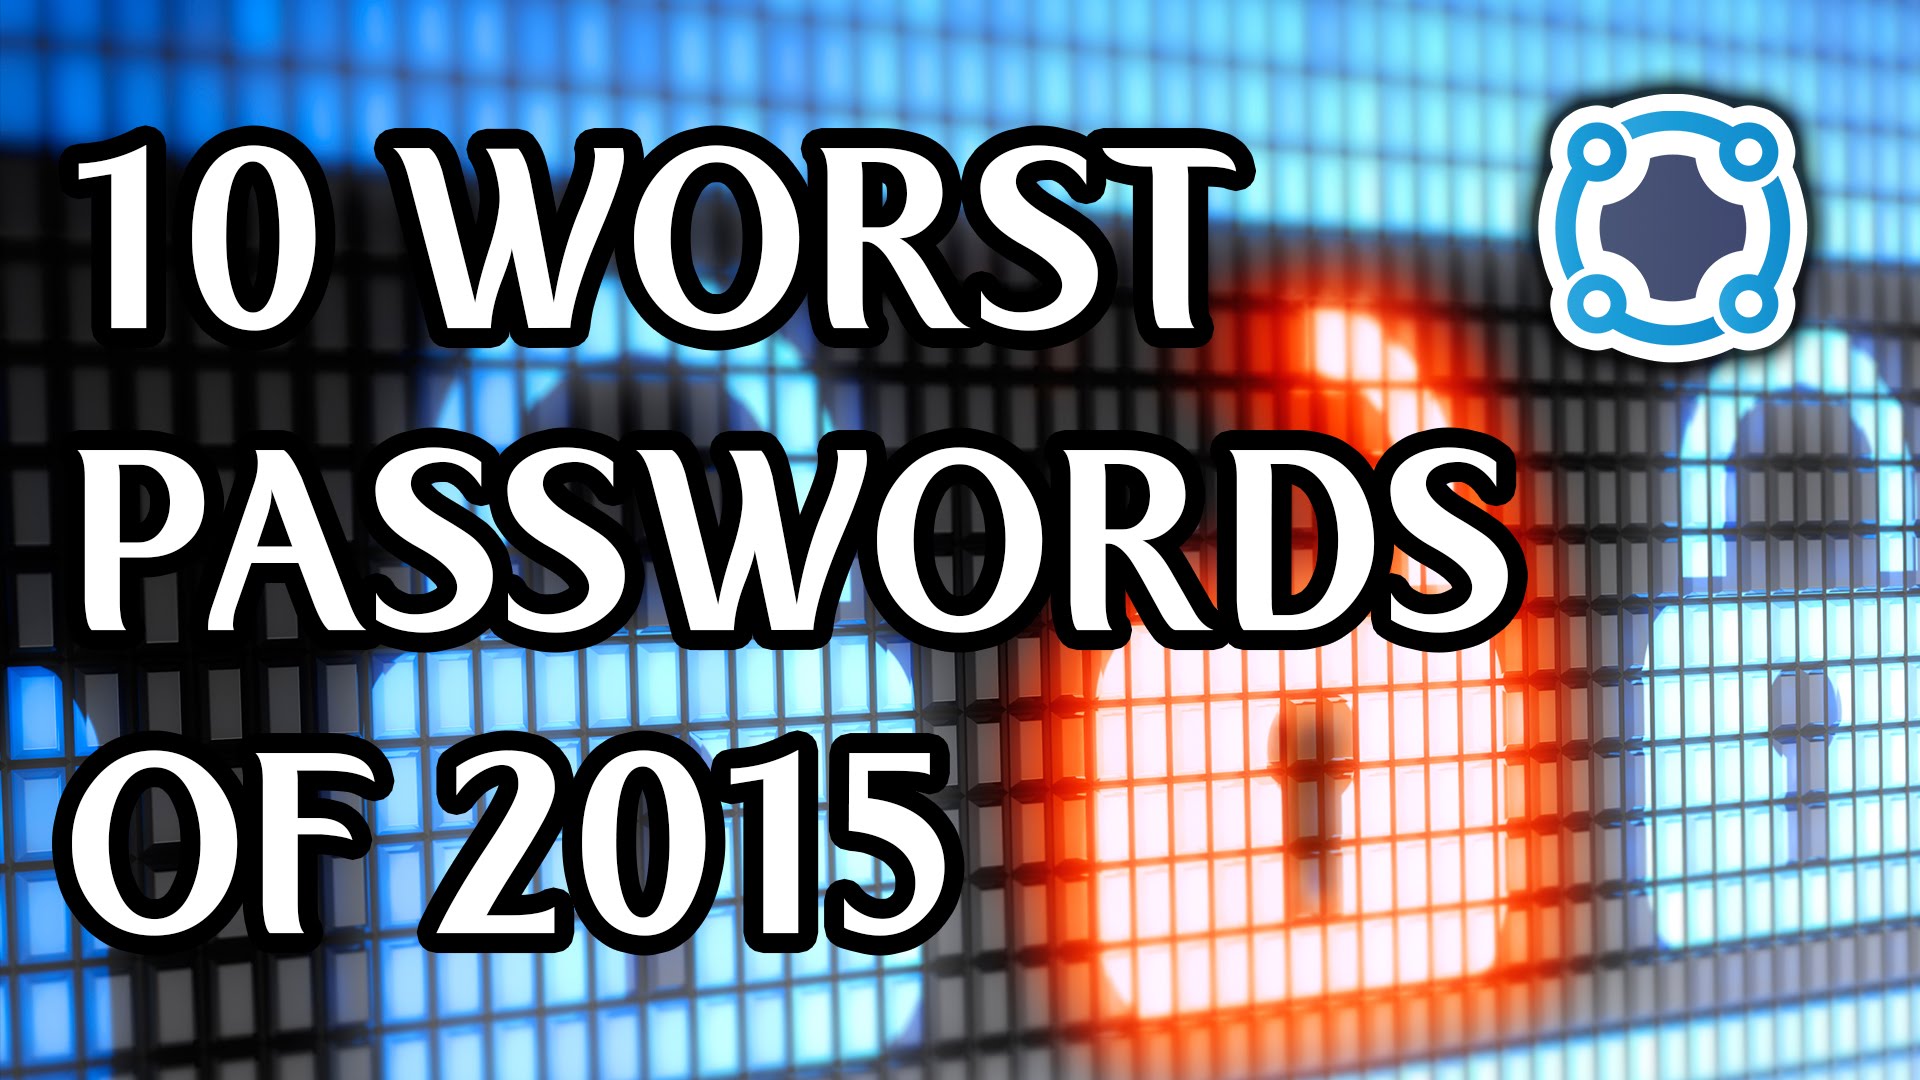 Top 10 Worst Passwords From 2015